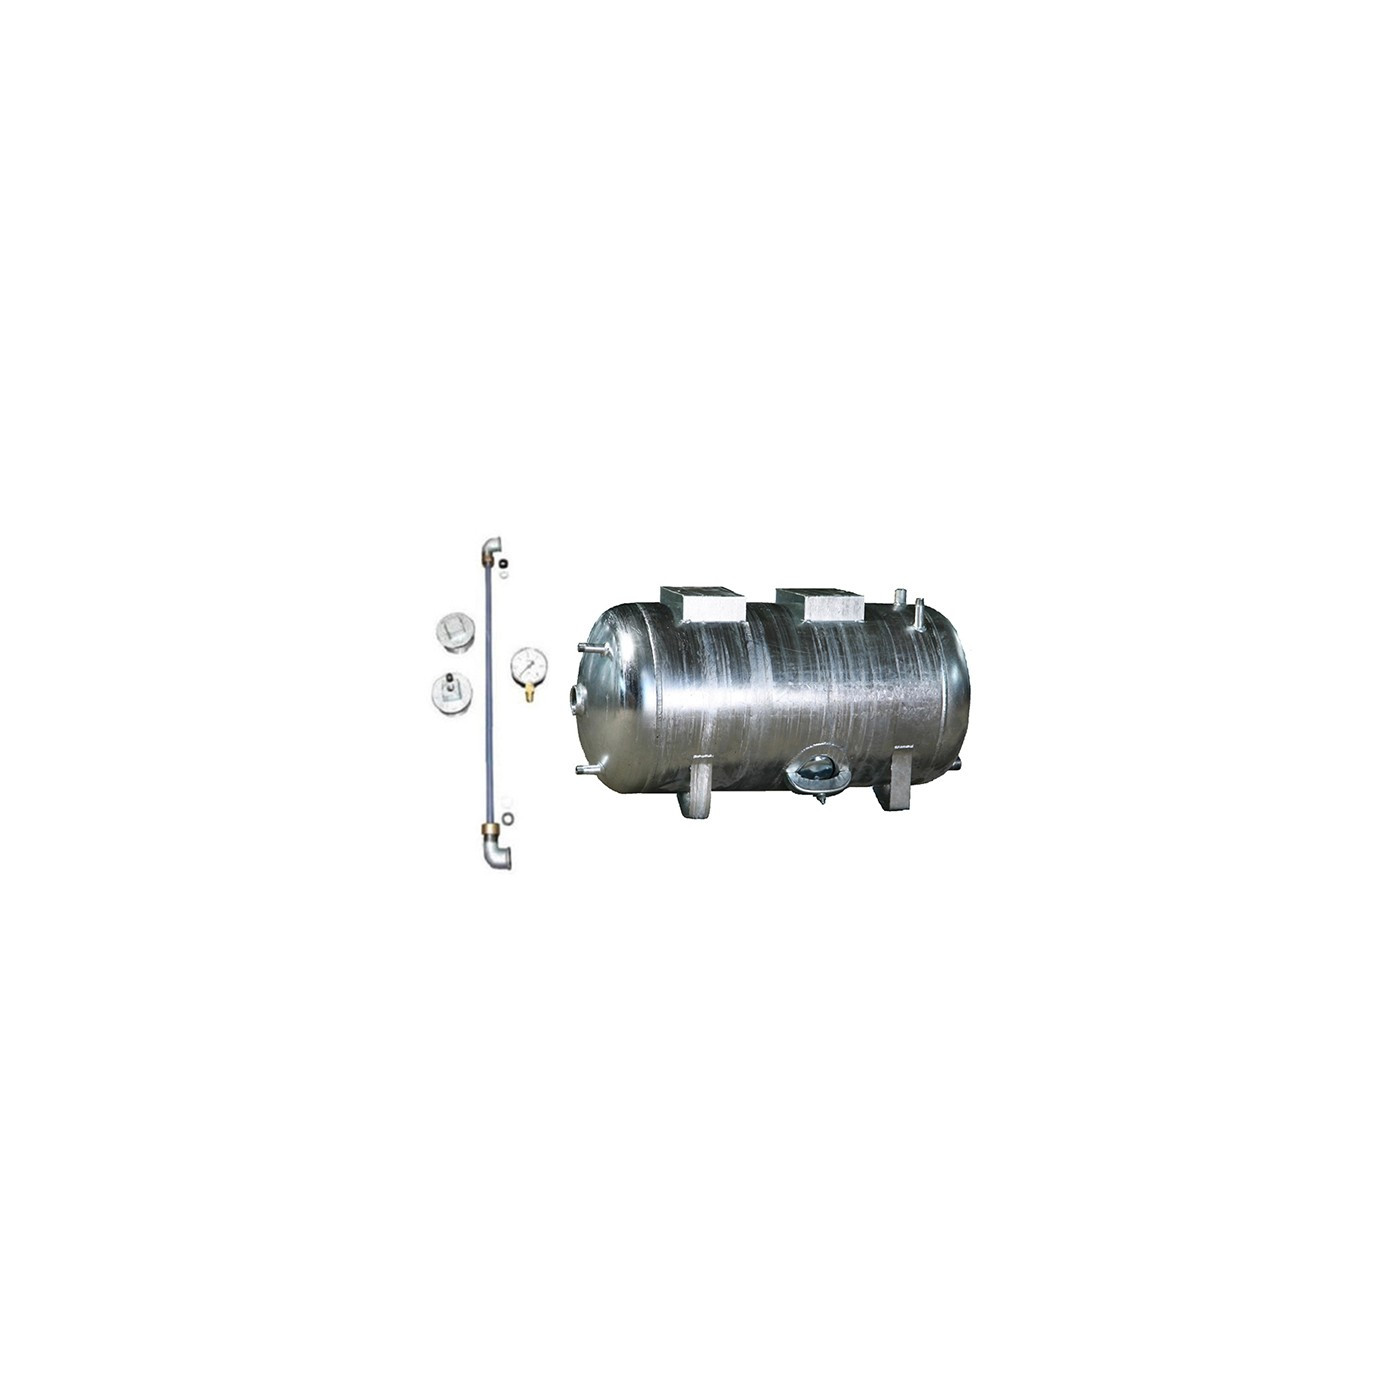 Druckbehälter 100 bis 300L 6 bar liegend mit Zubehör verzinkt Druckwasserkessel Druckkessel für Hauswasserwerk